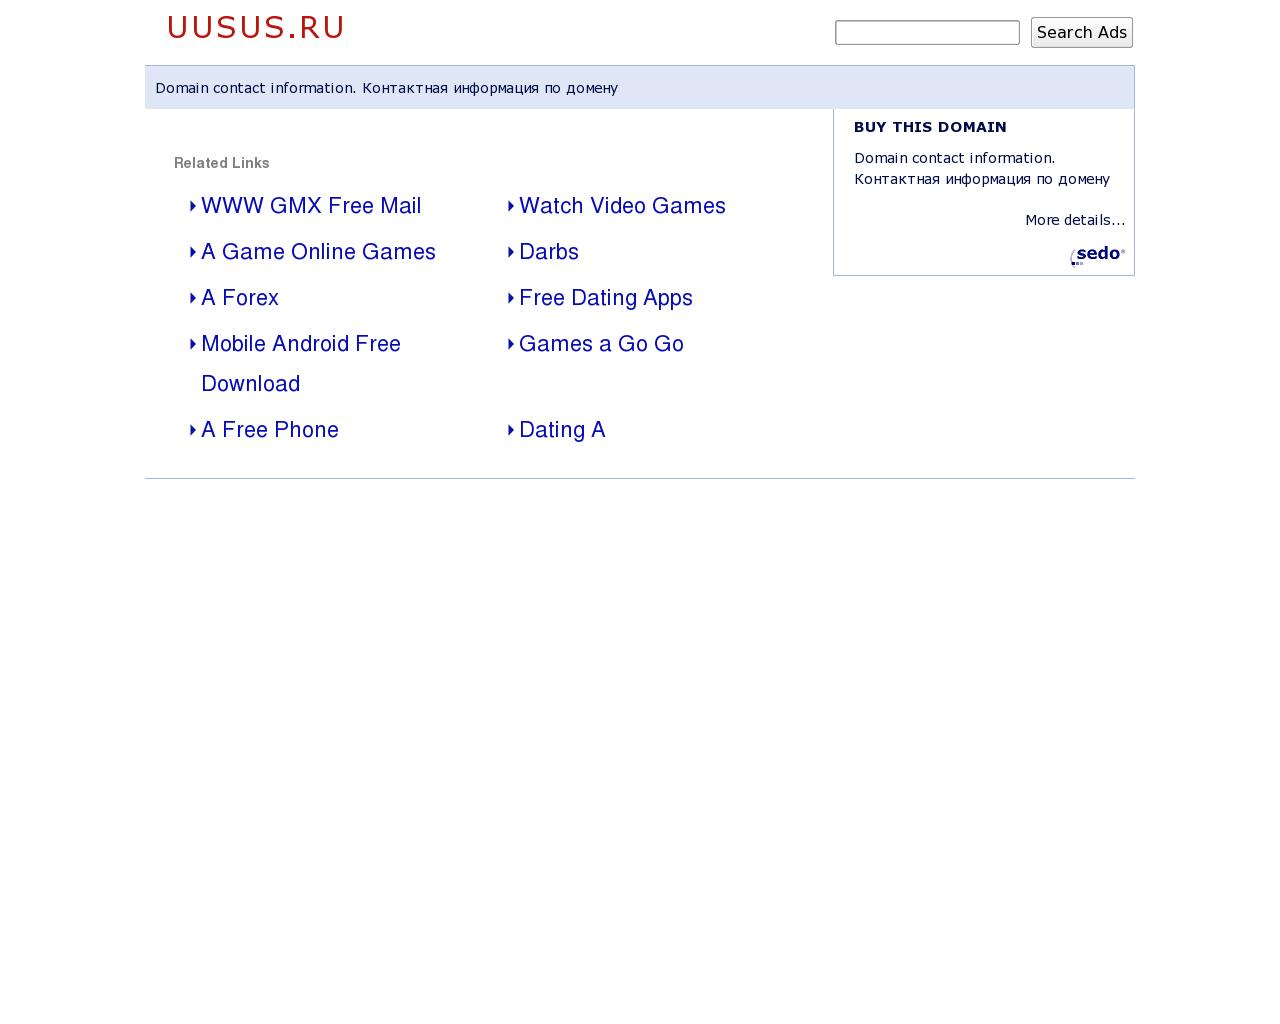 Изображение сайта uusus.ru в разрешении 1280x1024